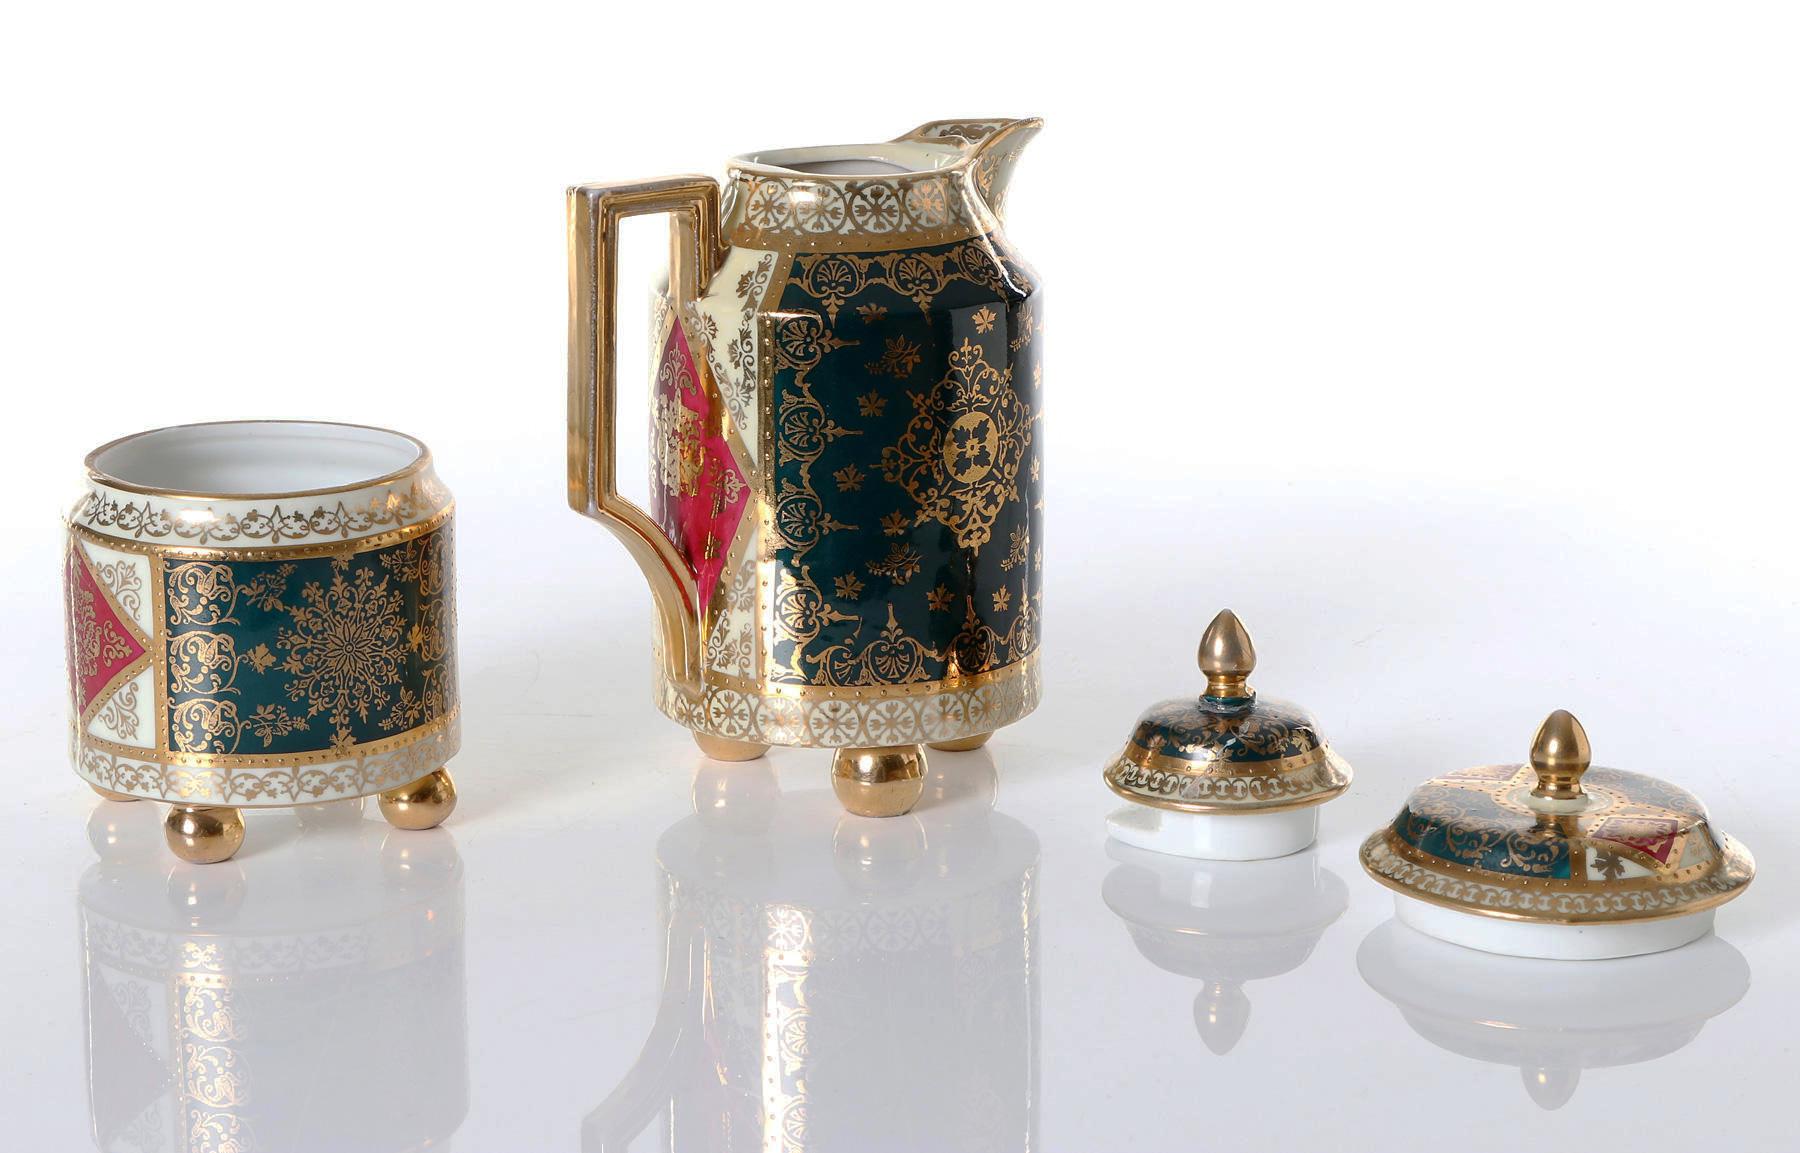 Boîte à sucre et Canette avec couvercle en porcelaine royale de Vienne peinte à la main (probablement par Angelica Kauffmann).
Mesures : Hauteur 11cm et 17cm.